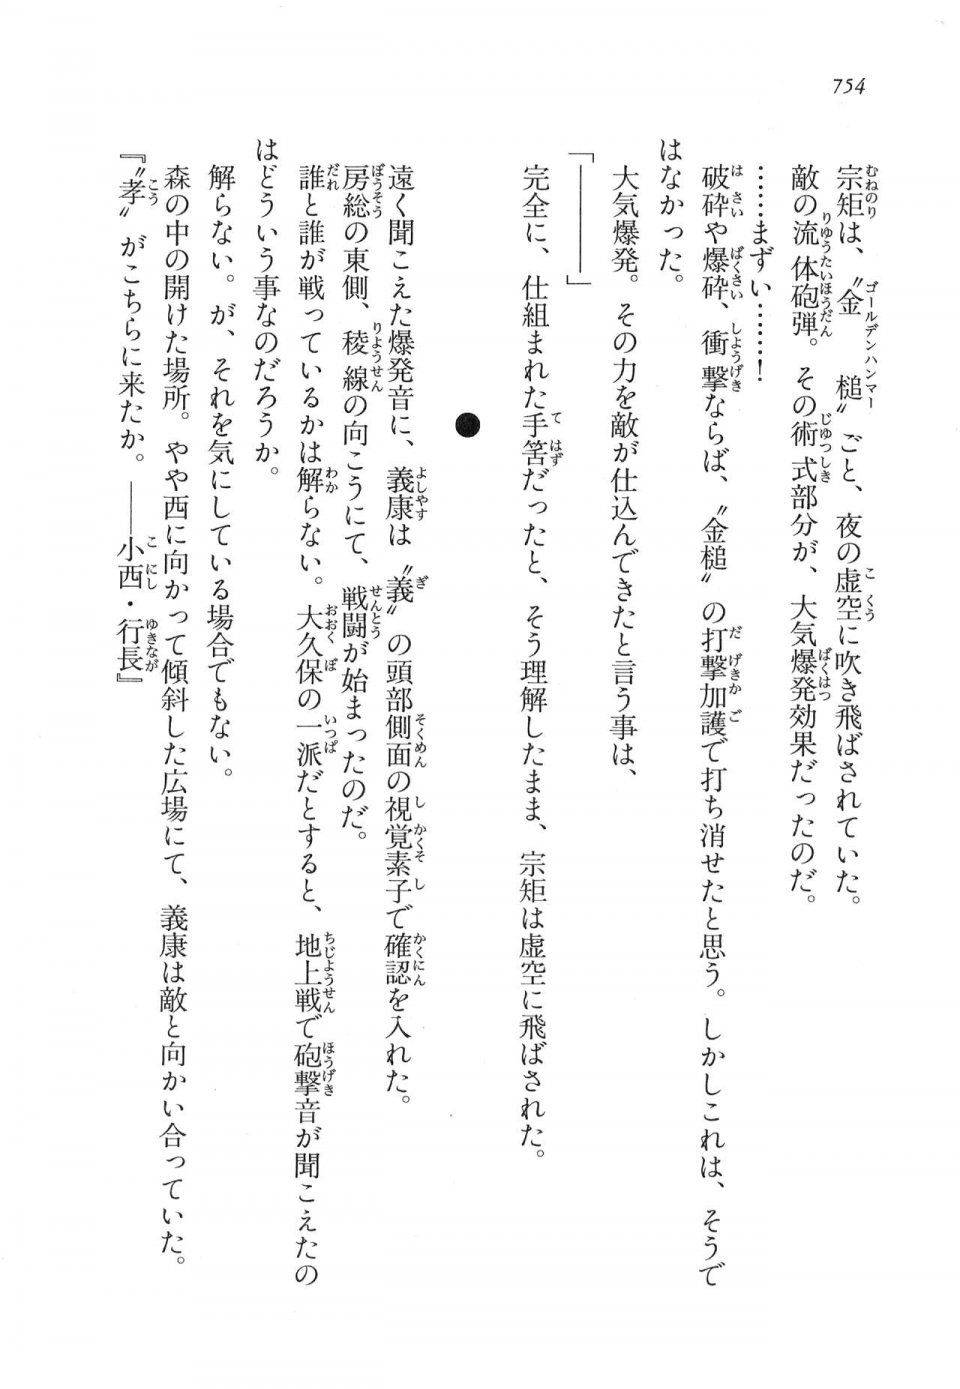 Kyoukai Senjou no Horizon LN Vol 17(7B) - Photo #756